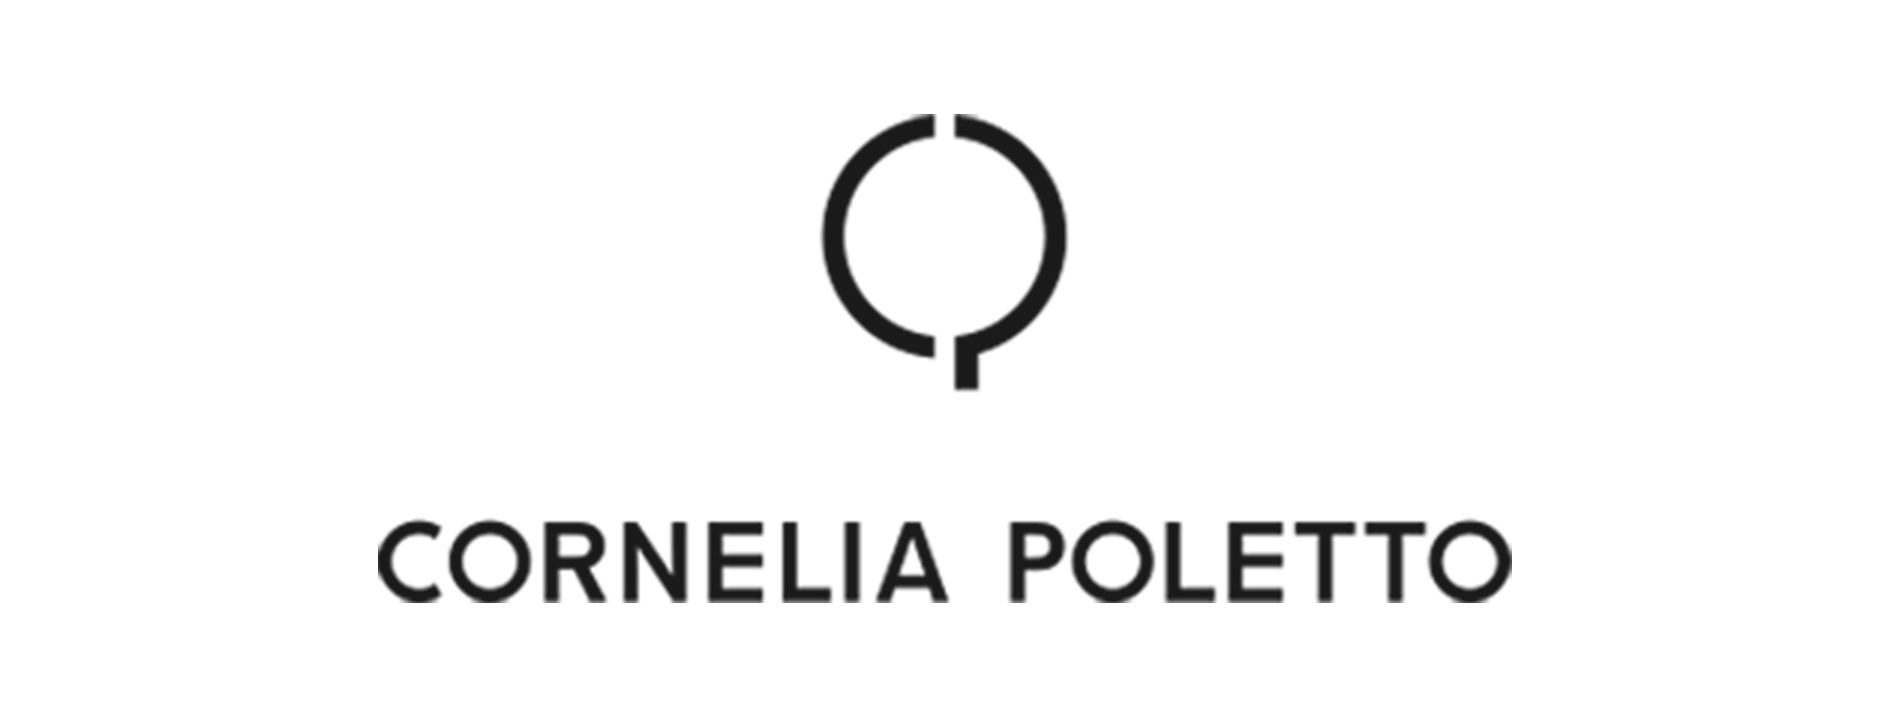 Poletto logo2 3x